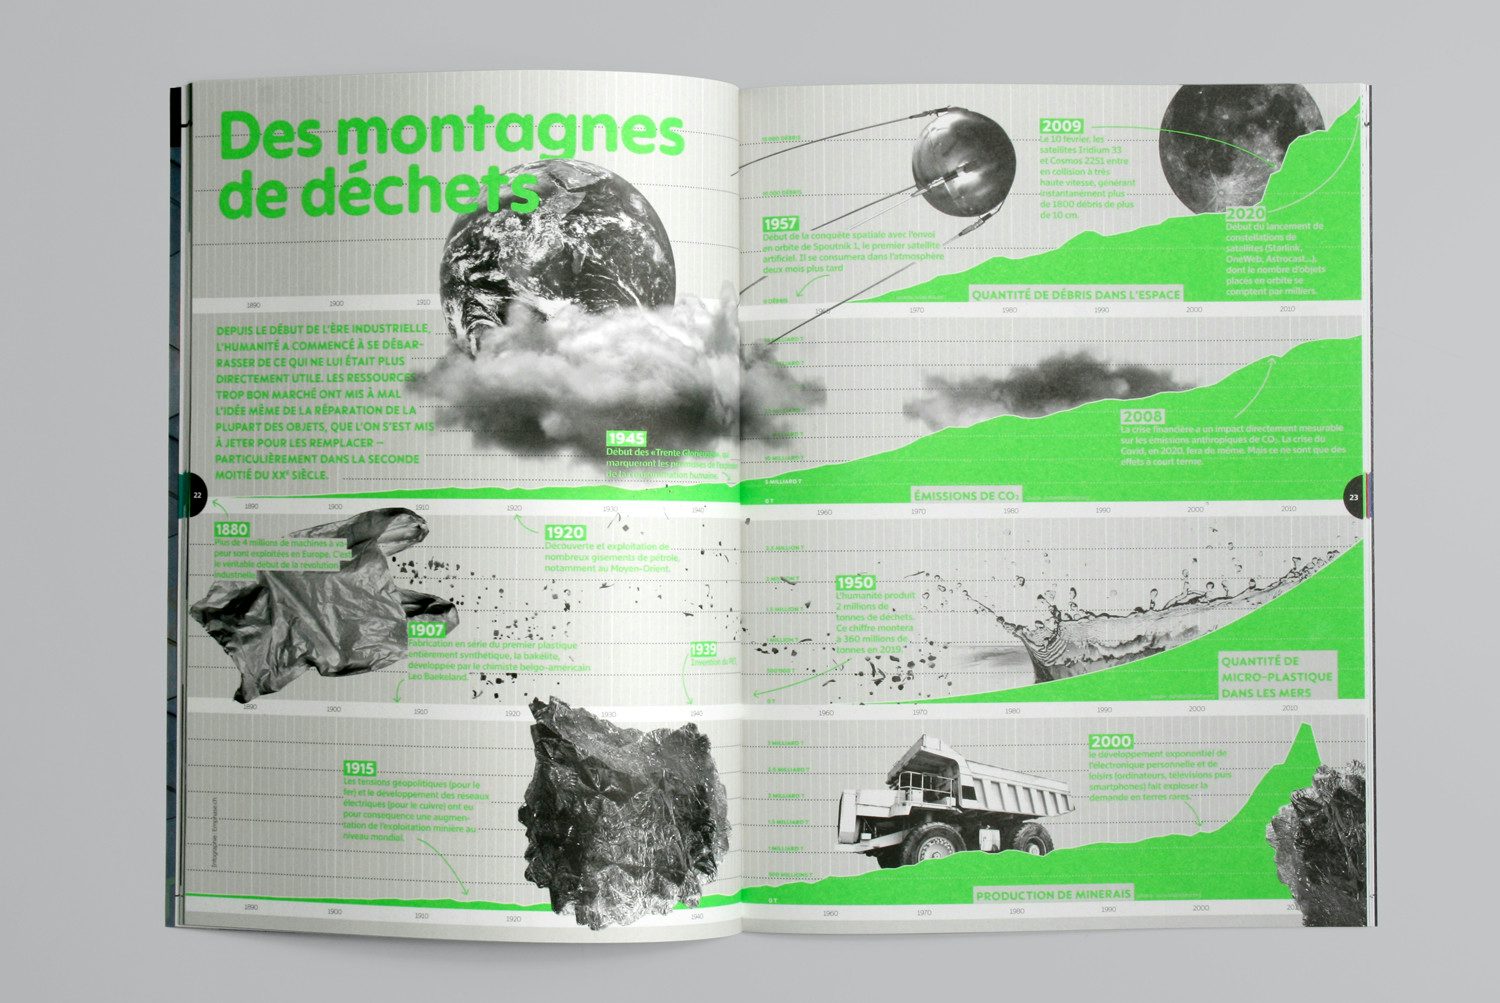 01 EPFL MONTAGNE DE DECHETS